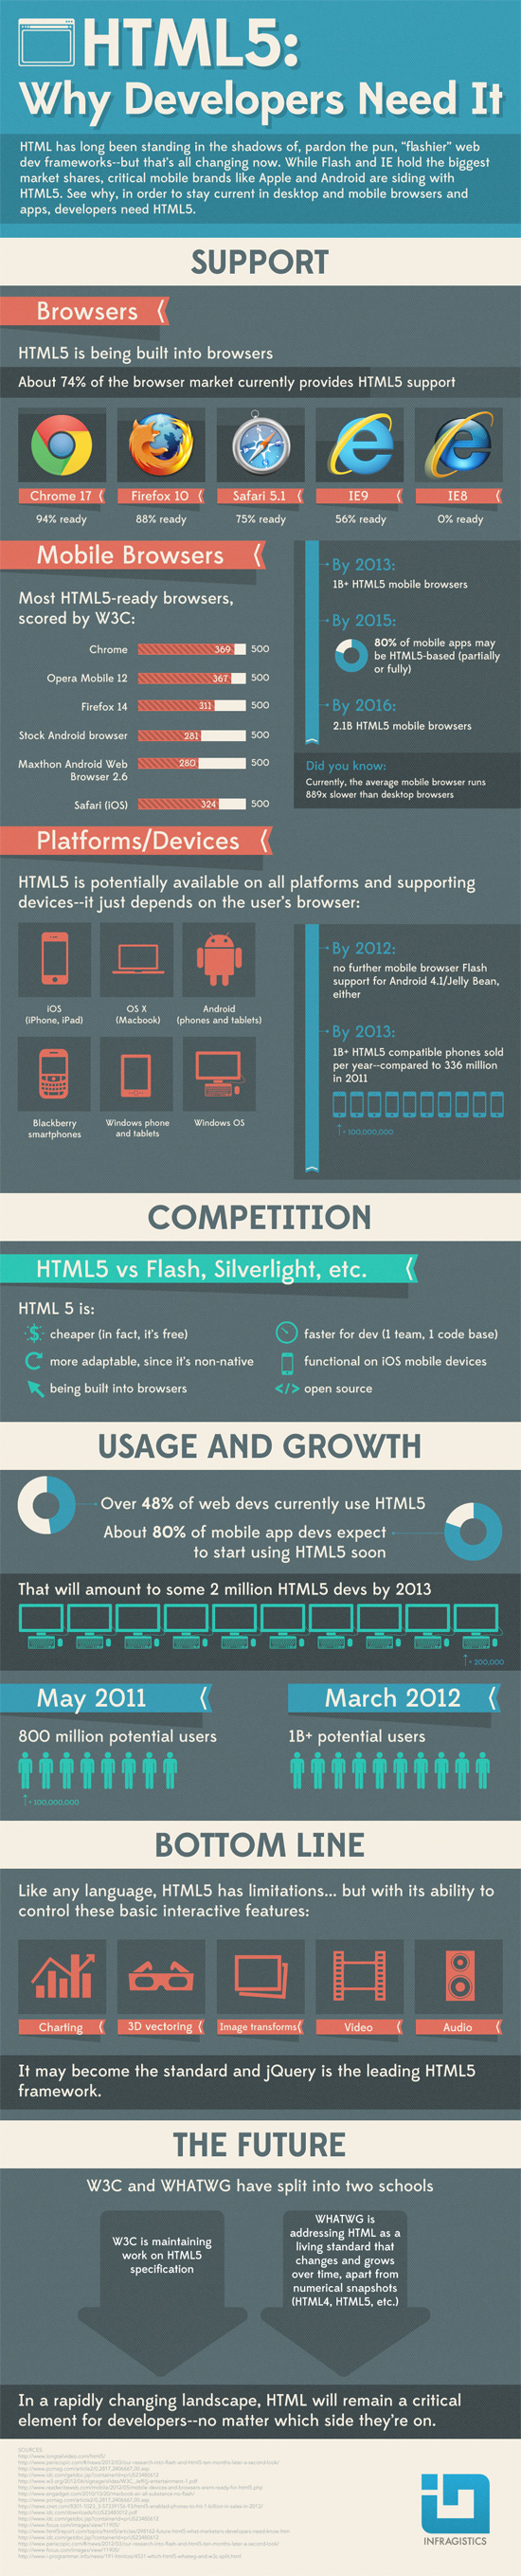 infográficos coriosos e interessantes sobre o HTML 5 (5)